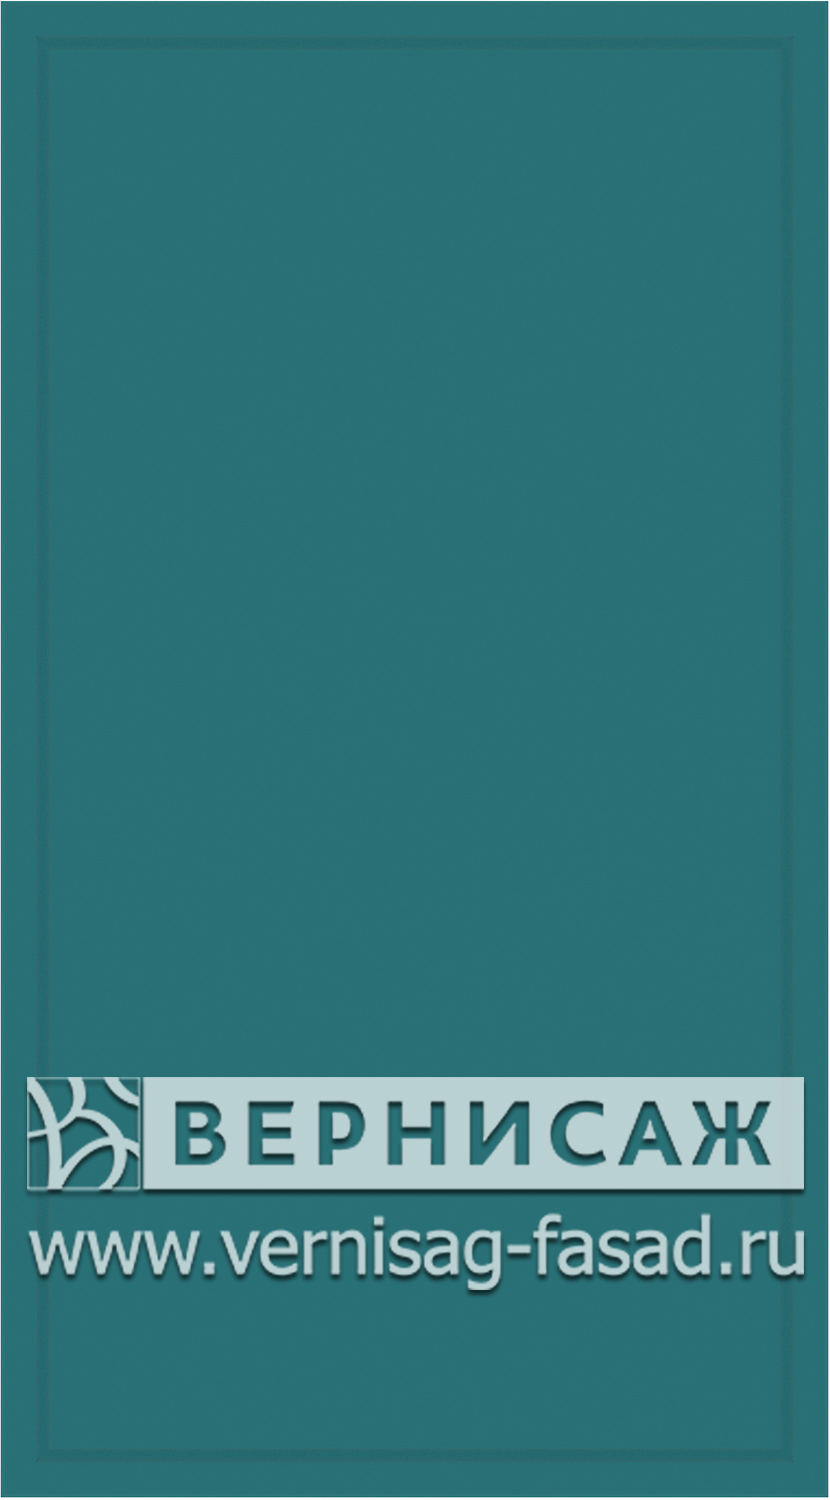 Фасады в пленке ПВХ, Фрезеровка № W2, цвет  Морская волна софт 